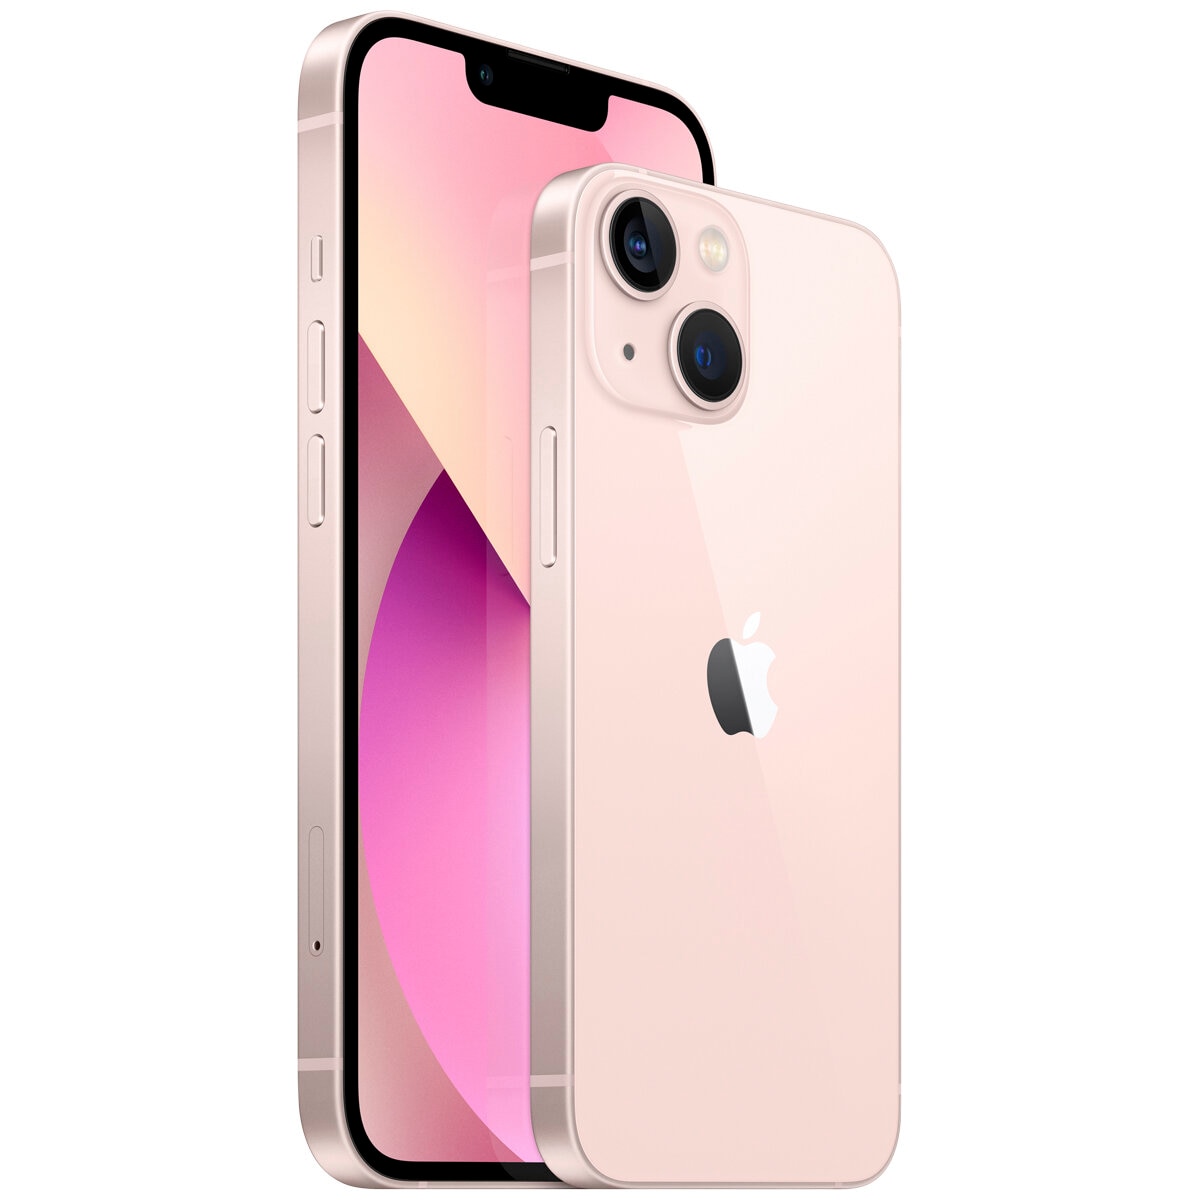 Apple iPhone 13 mini 128GB Pink MLK23X/A